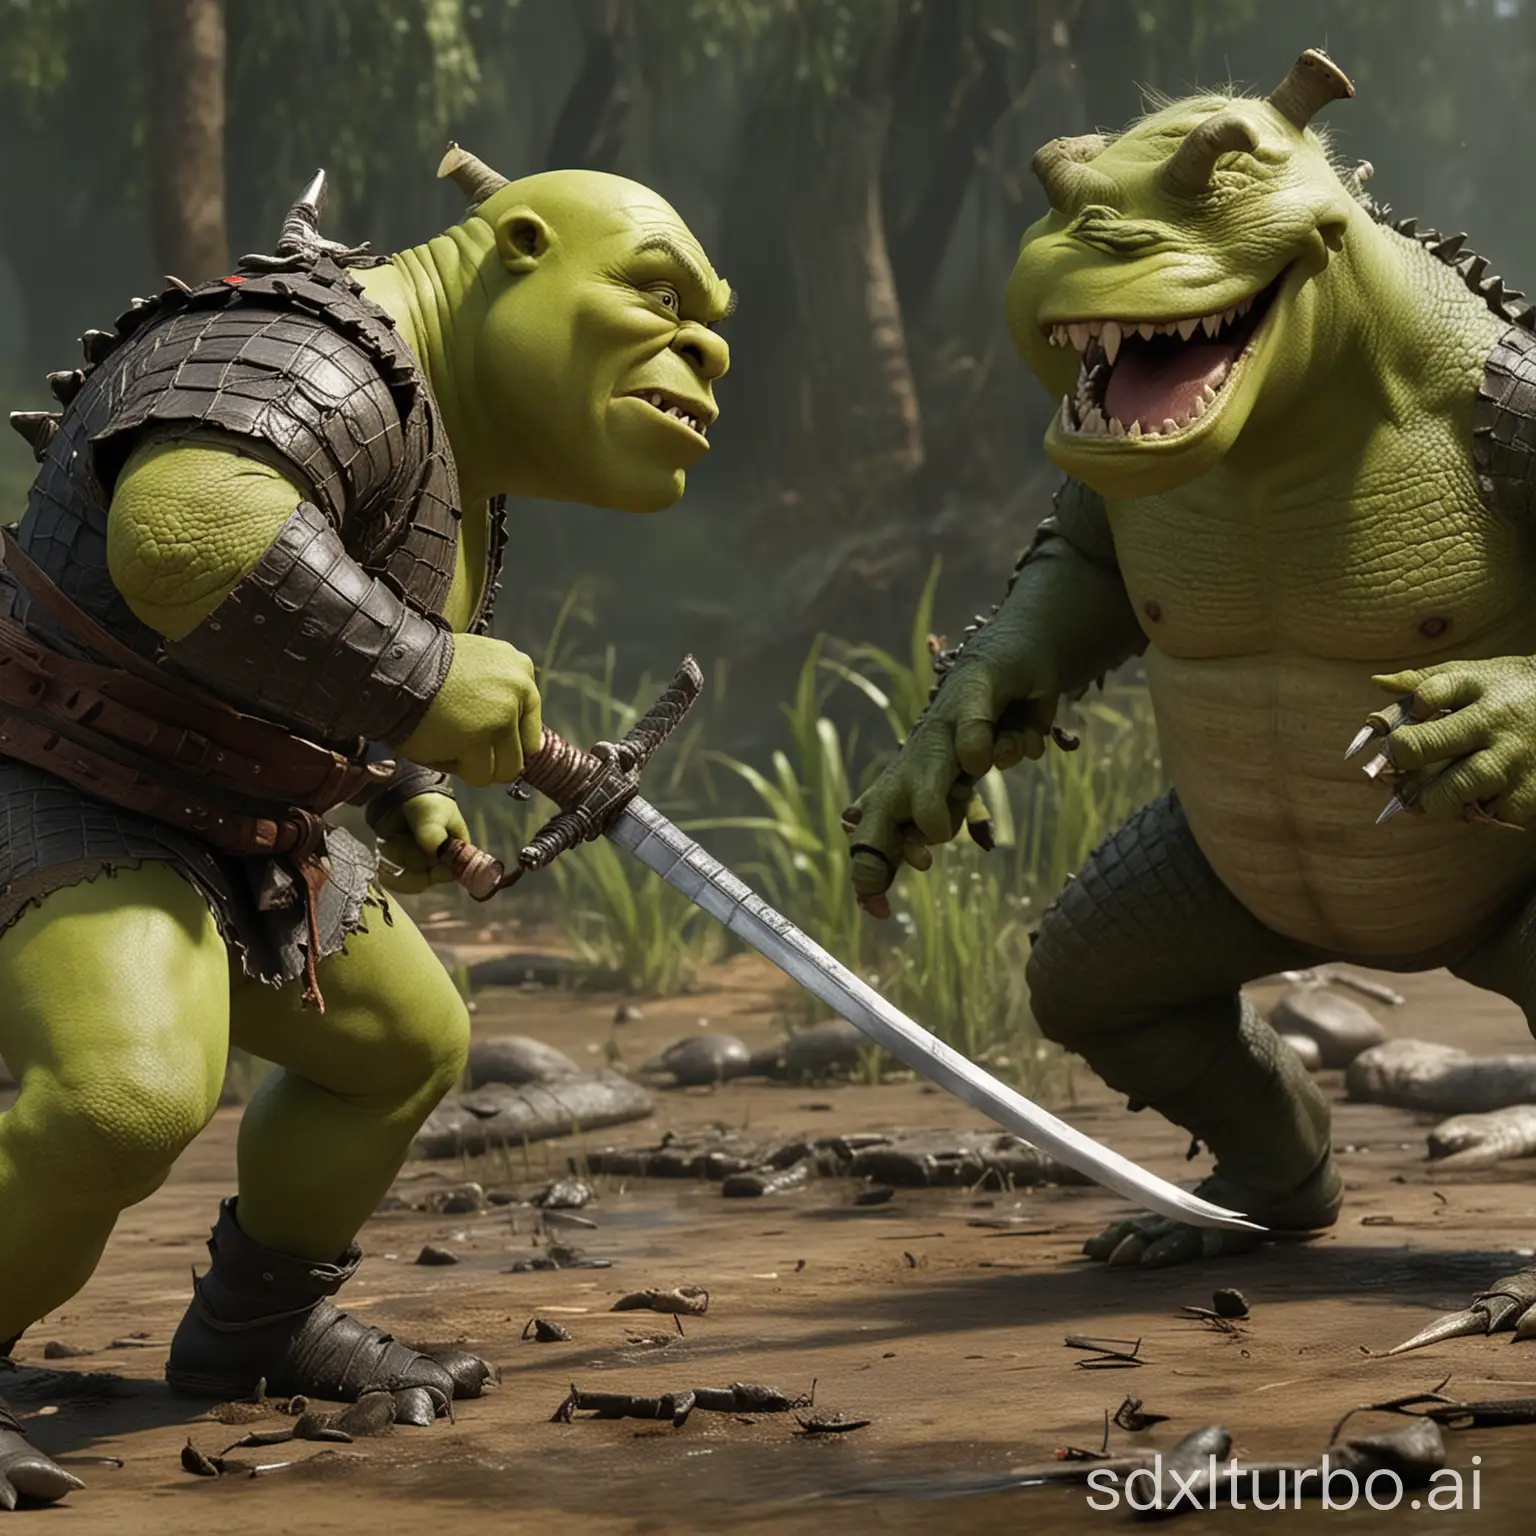 Shrek with a katana fights with a crocodile